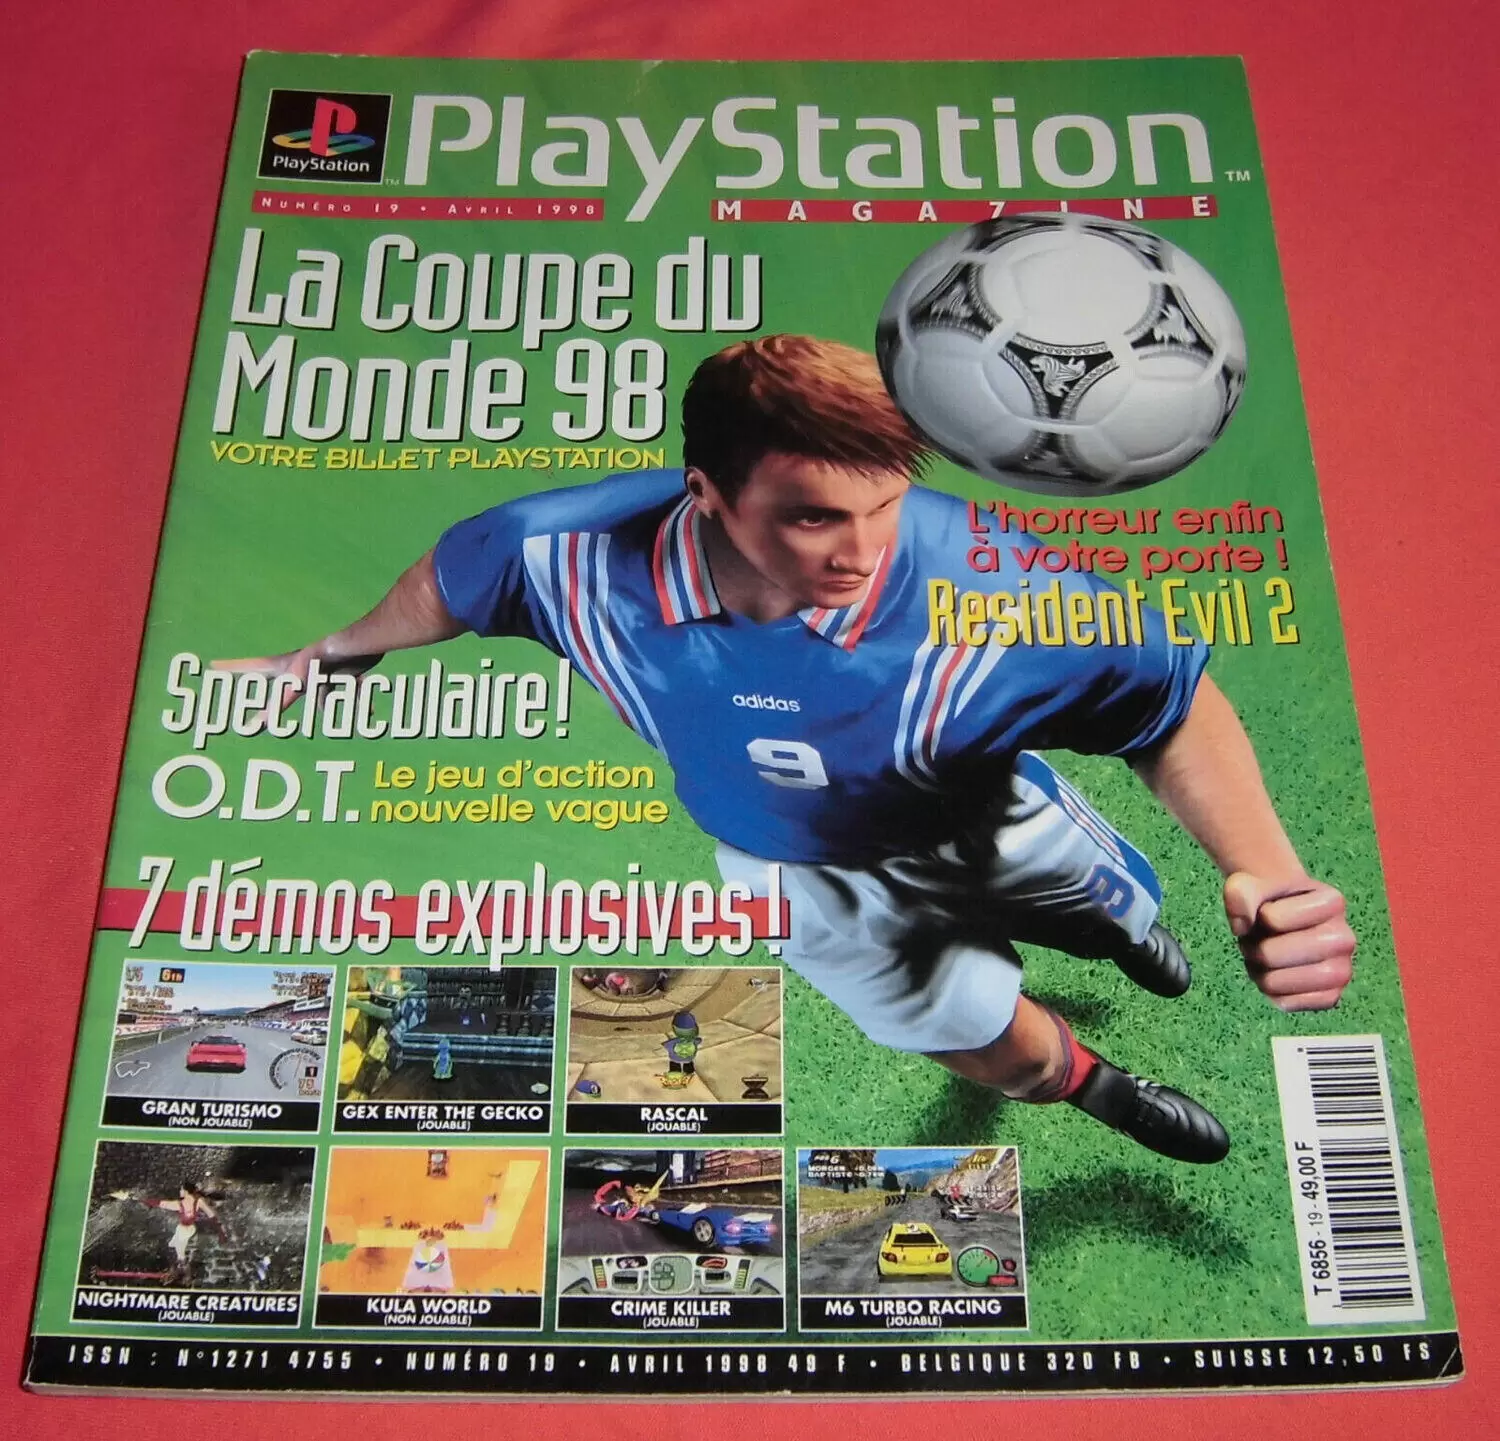 Playstation Magazine - Playstation Magazine #19